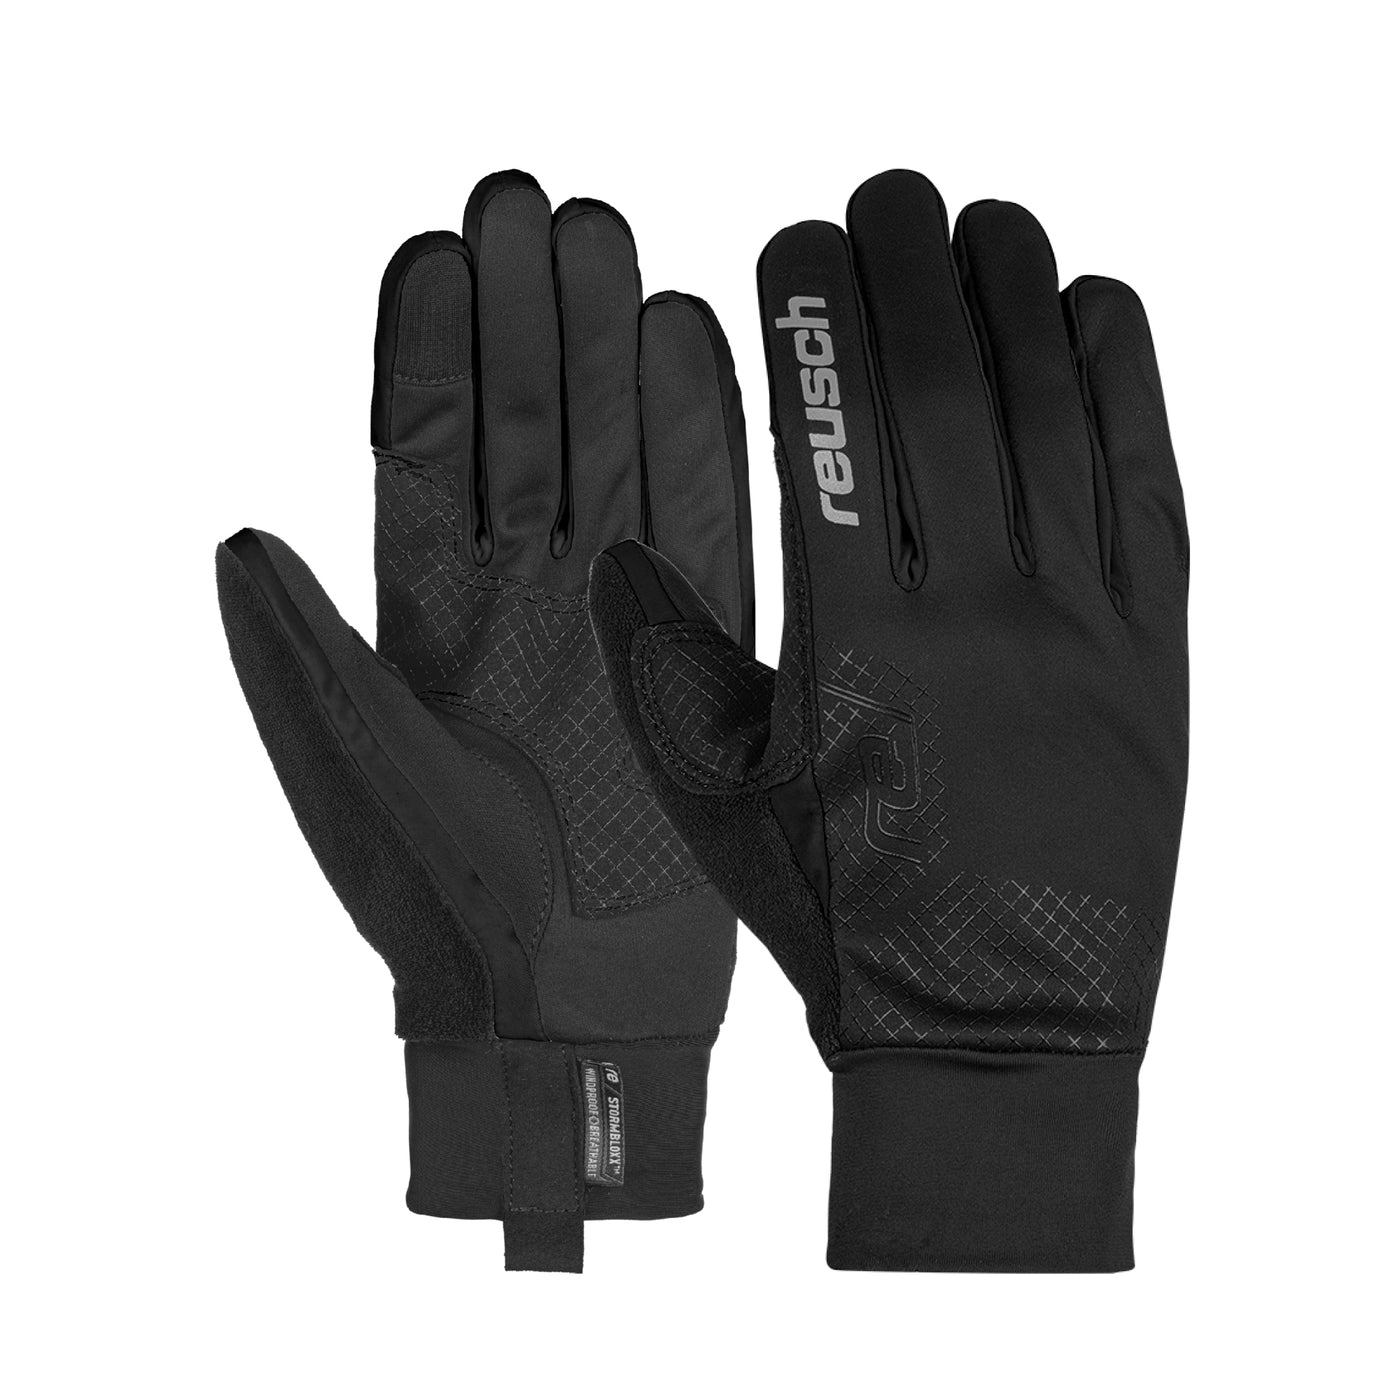 Reusch Arien StormBloxx Touch-Tec Unisex Gloves SnowKids SnowKids 